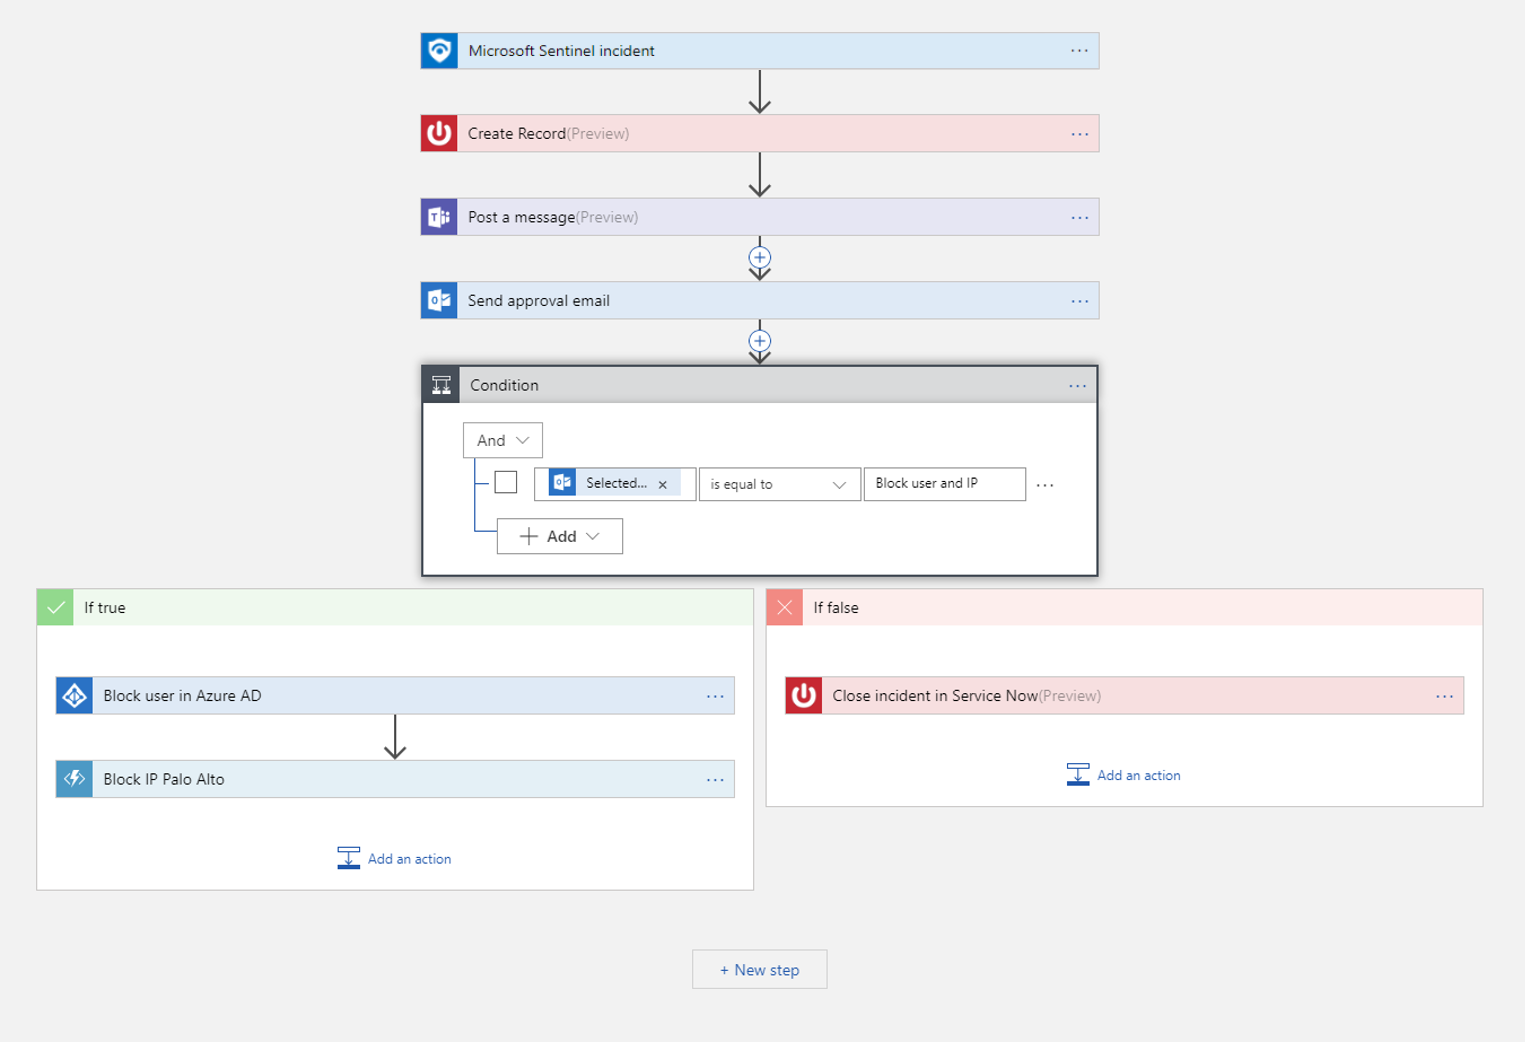 Captura de un ejemplo de flujo de trabajo automatizado en Azure Logic Apps, donde un incidente puede desencadenar diferentes acciones.